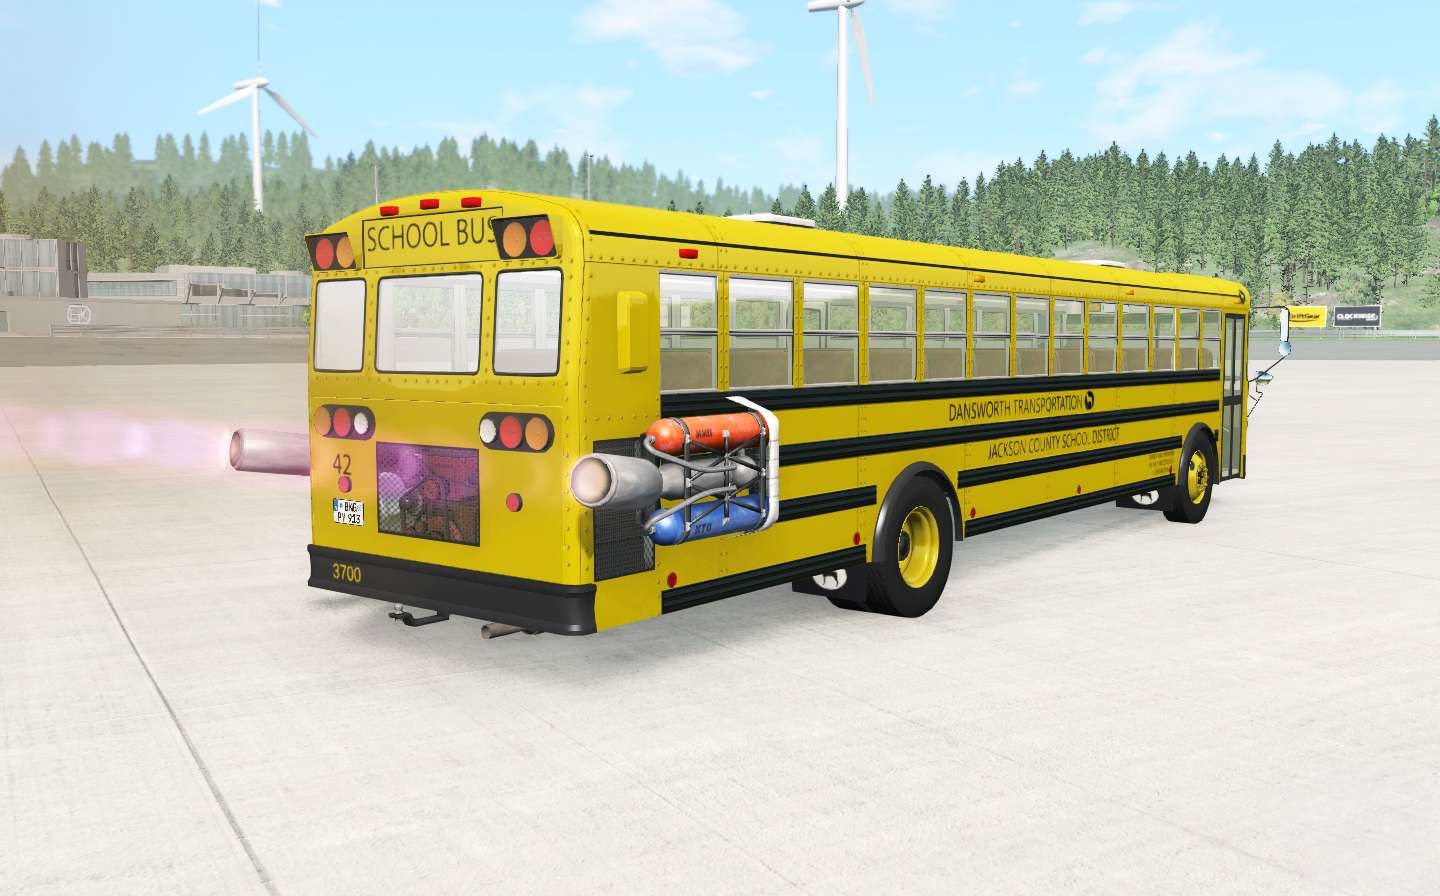 beamng drive type c school bus